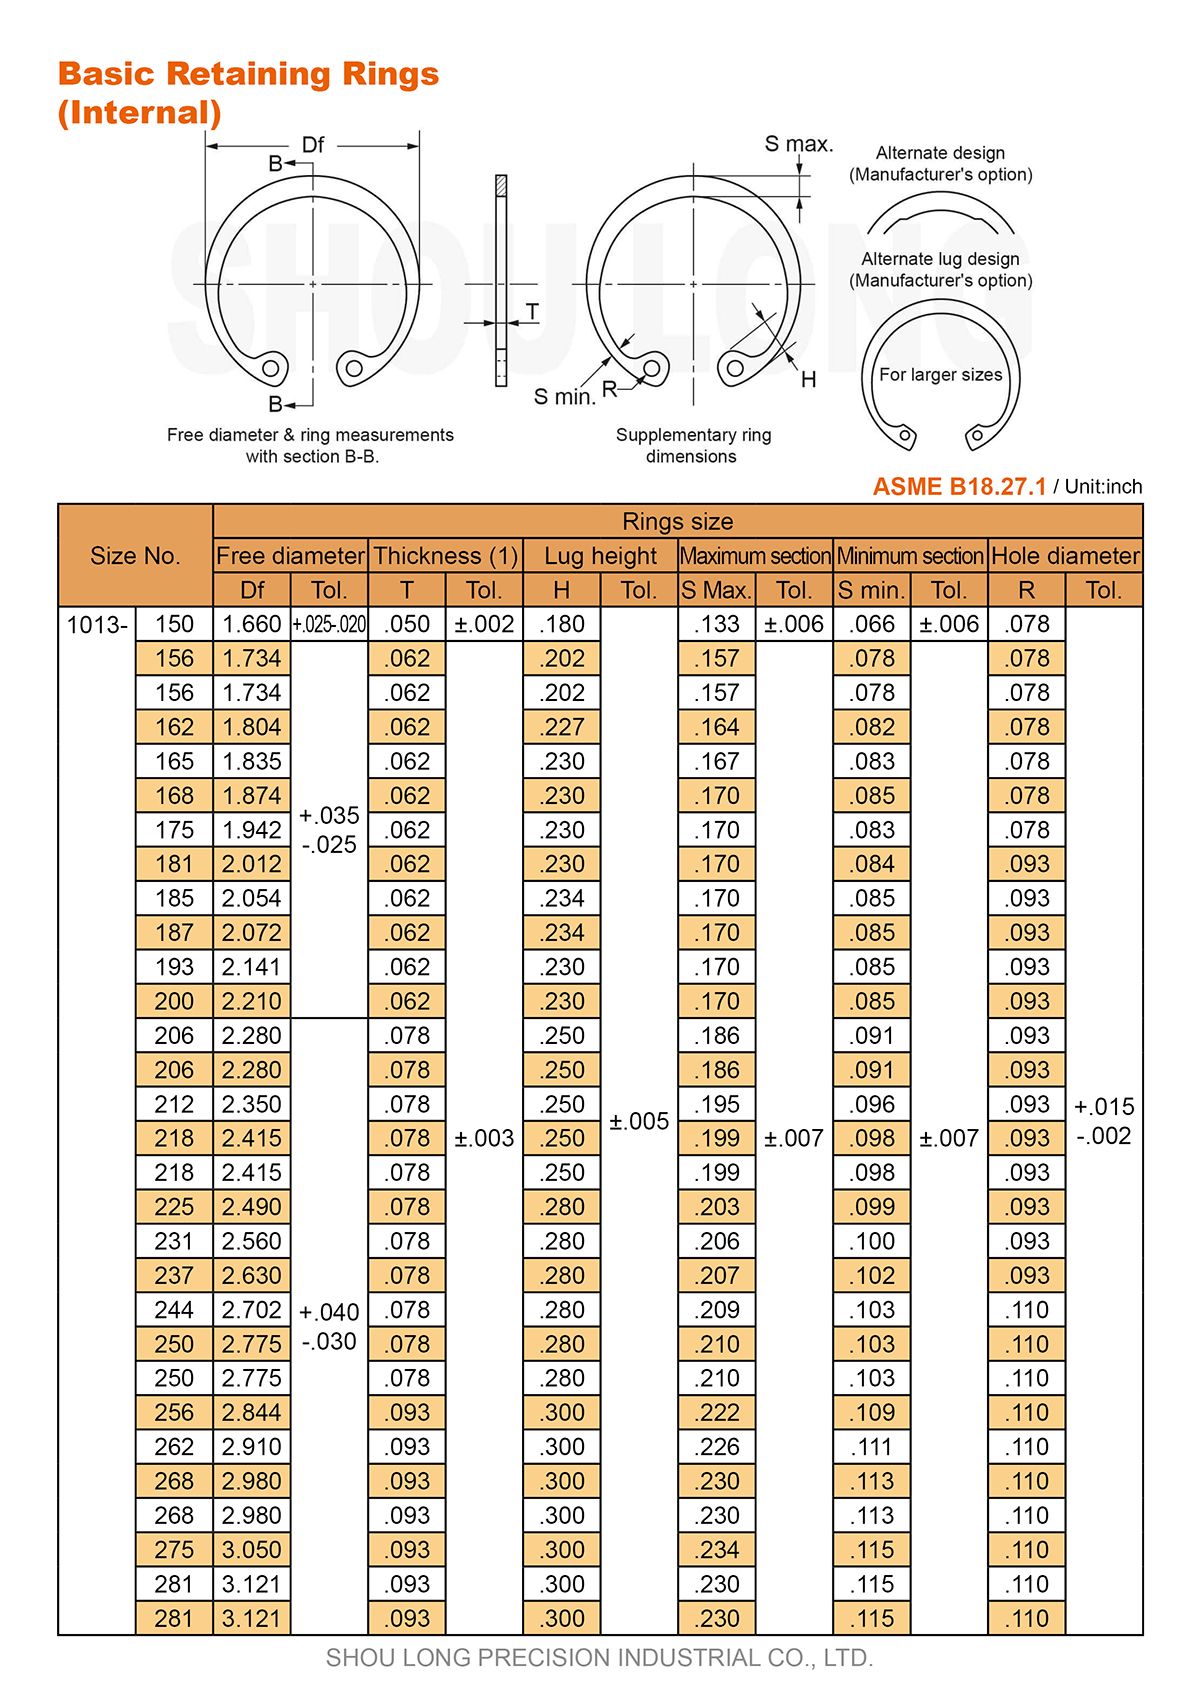 Spécification des bagues de retenue basiques en pouces pour alésages ASME/ANSI B18.27.1-2